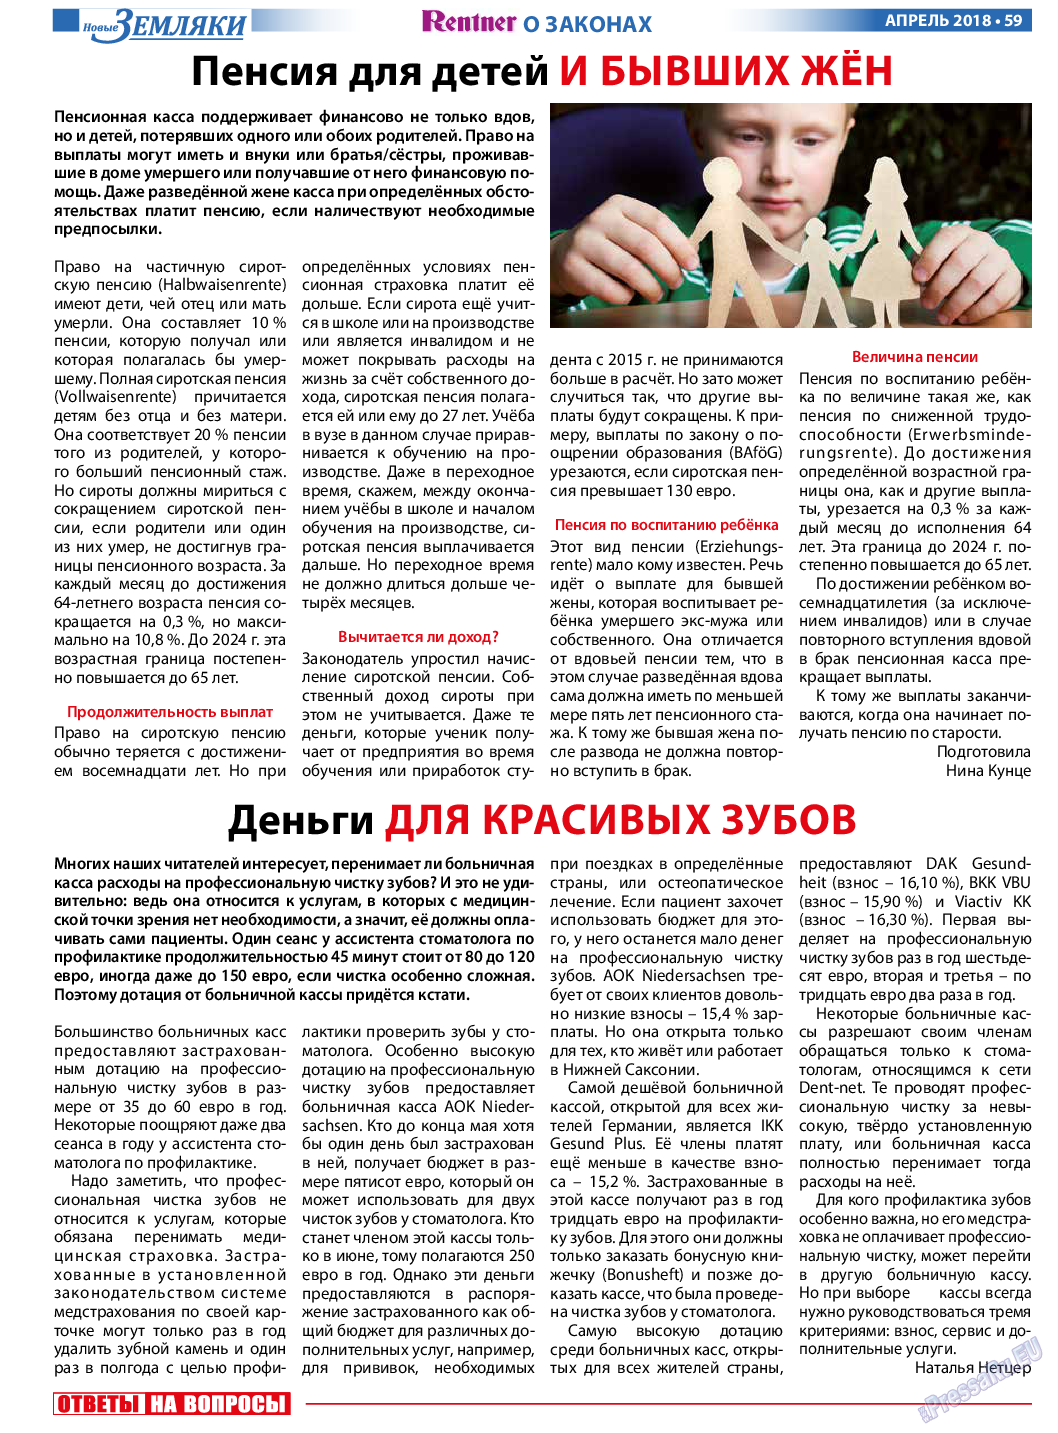 Новые Земляки, газета. 2018 №4 стр.59